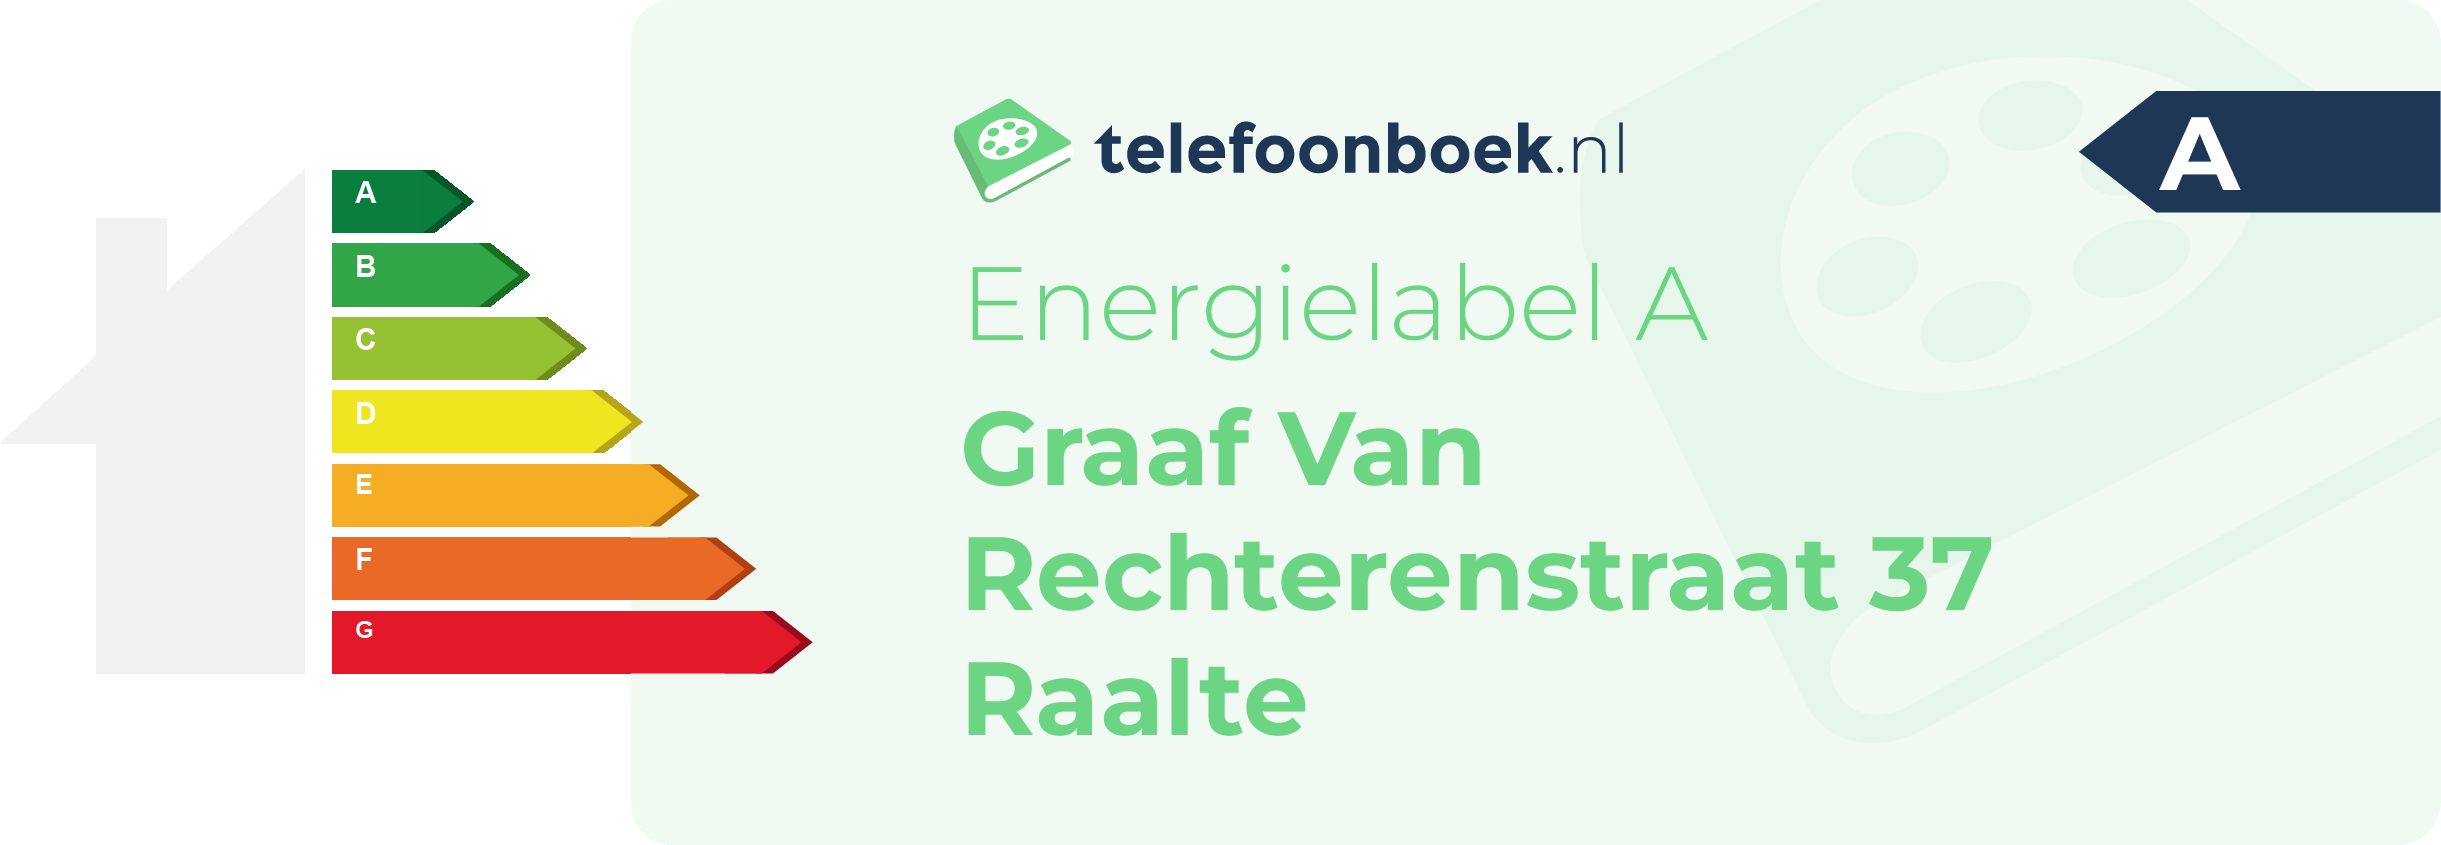 Energielabel Graaf Van Rechterenstraat 37 Raalte